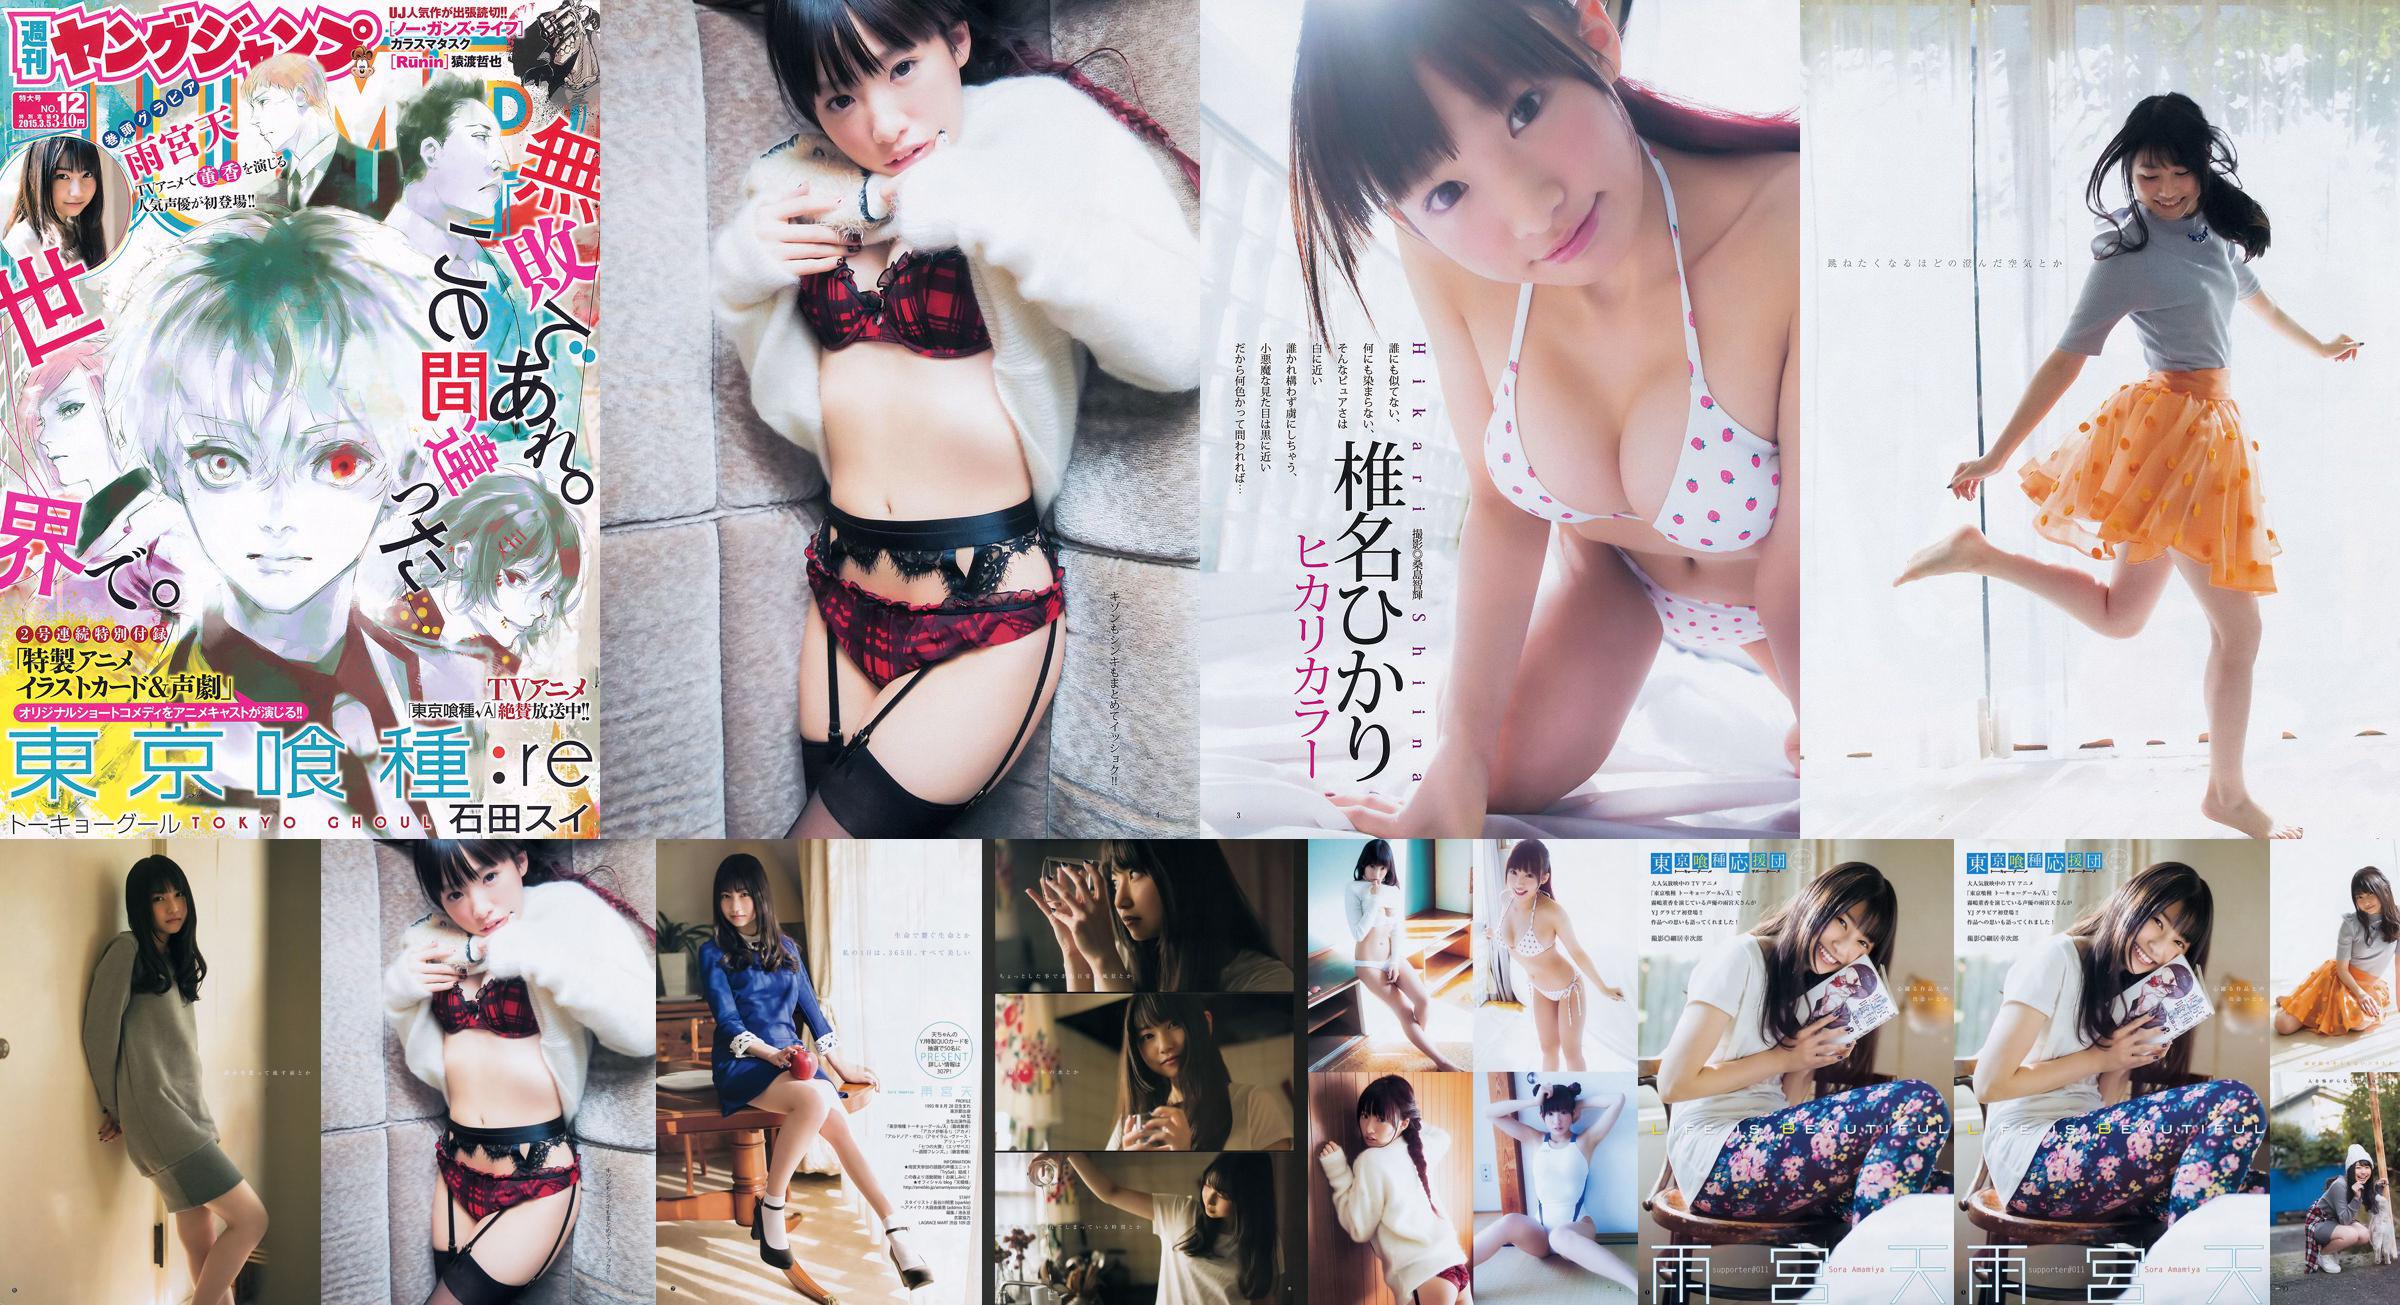 Amamiya Tian Shiina ひかり [Weekly Young Jump] 2015 No.12 Photo Magazine No.de1e0d Page 1